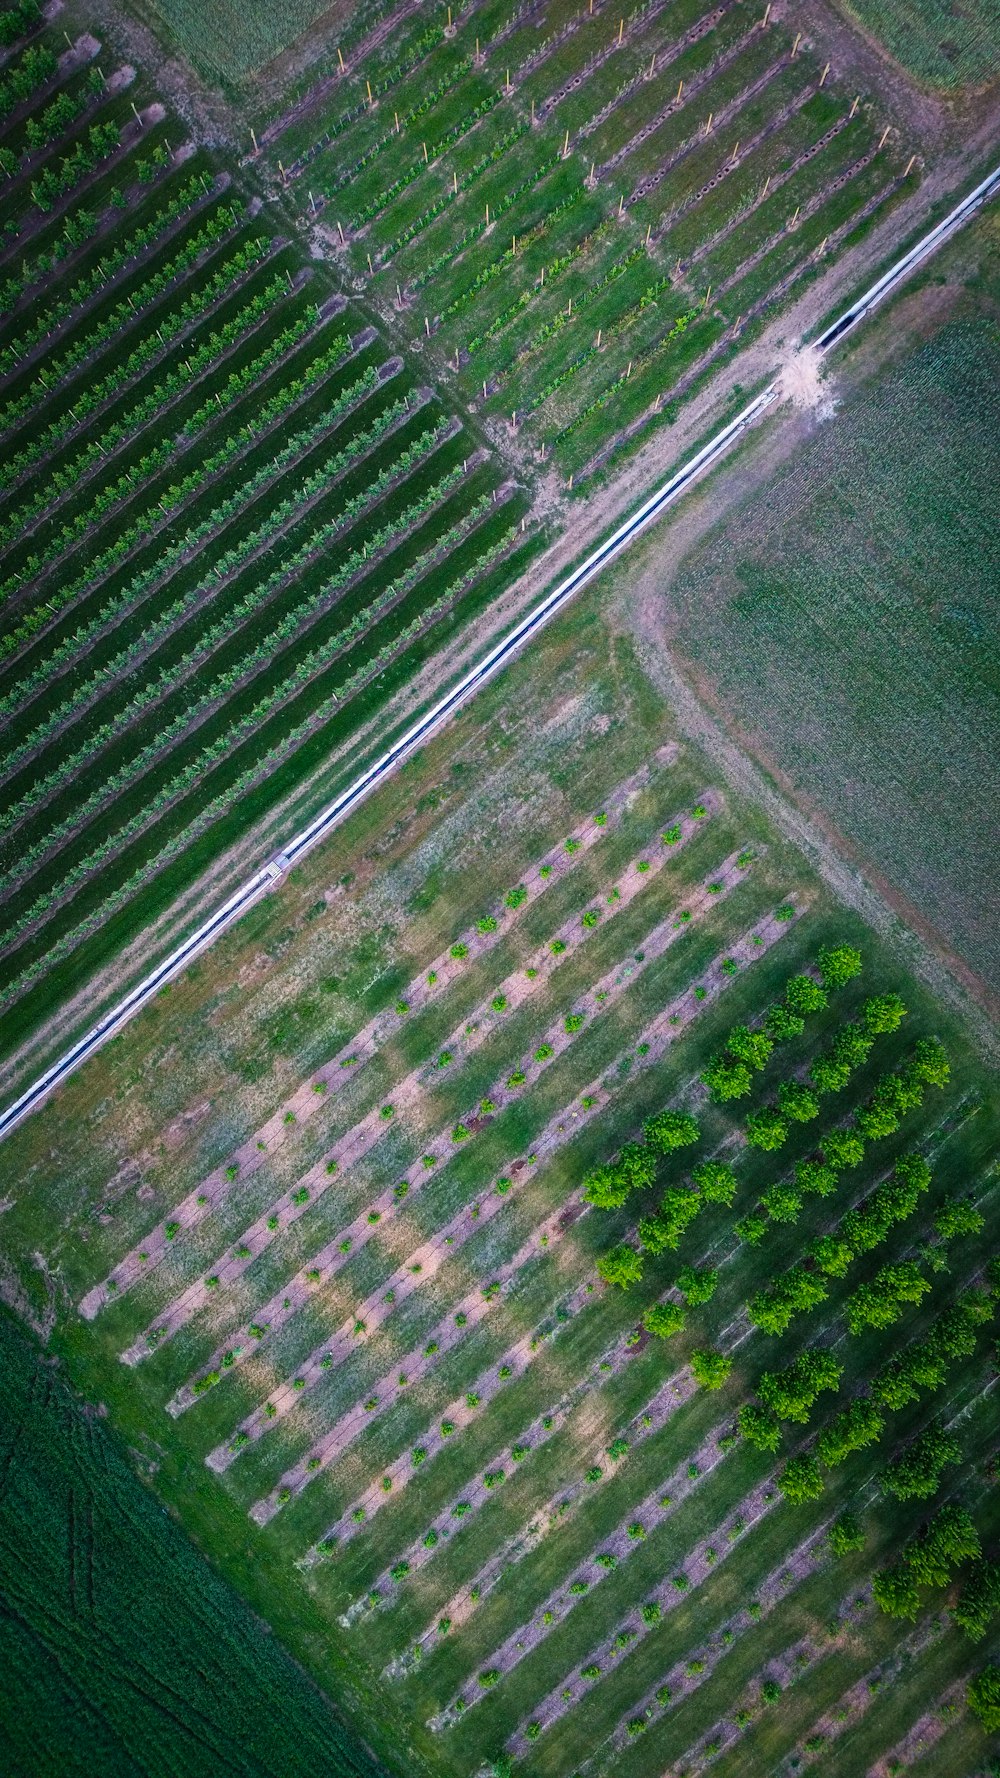 Una vista aérea de un campo con árboles